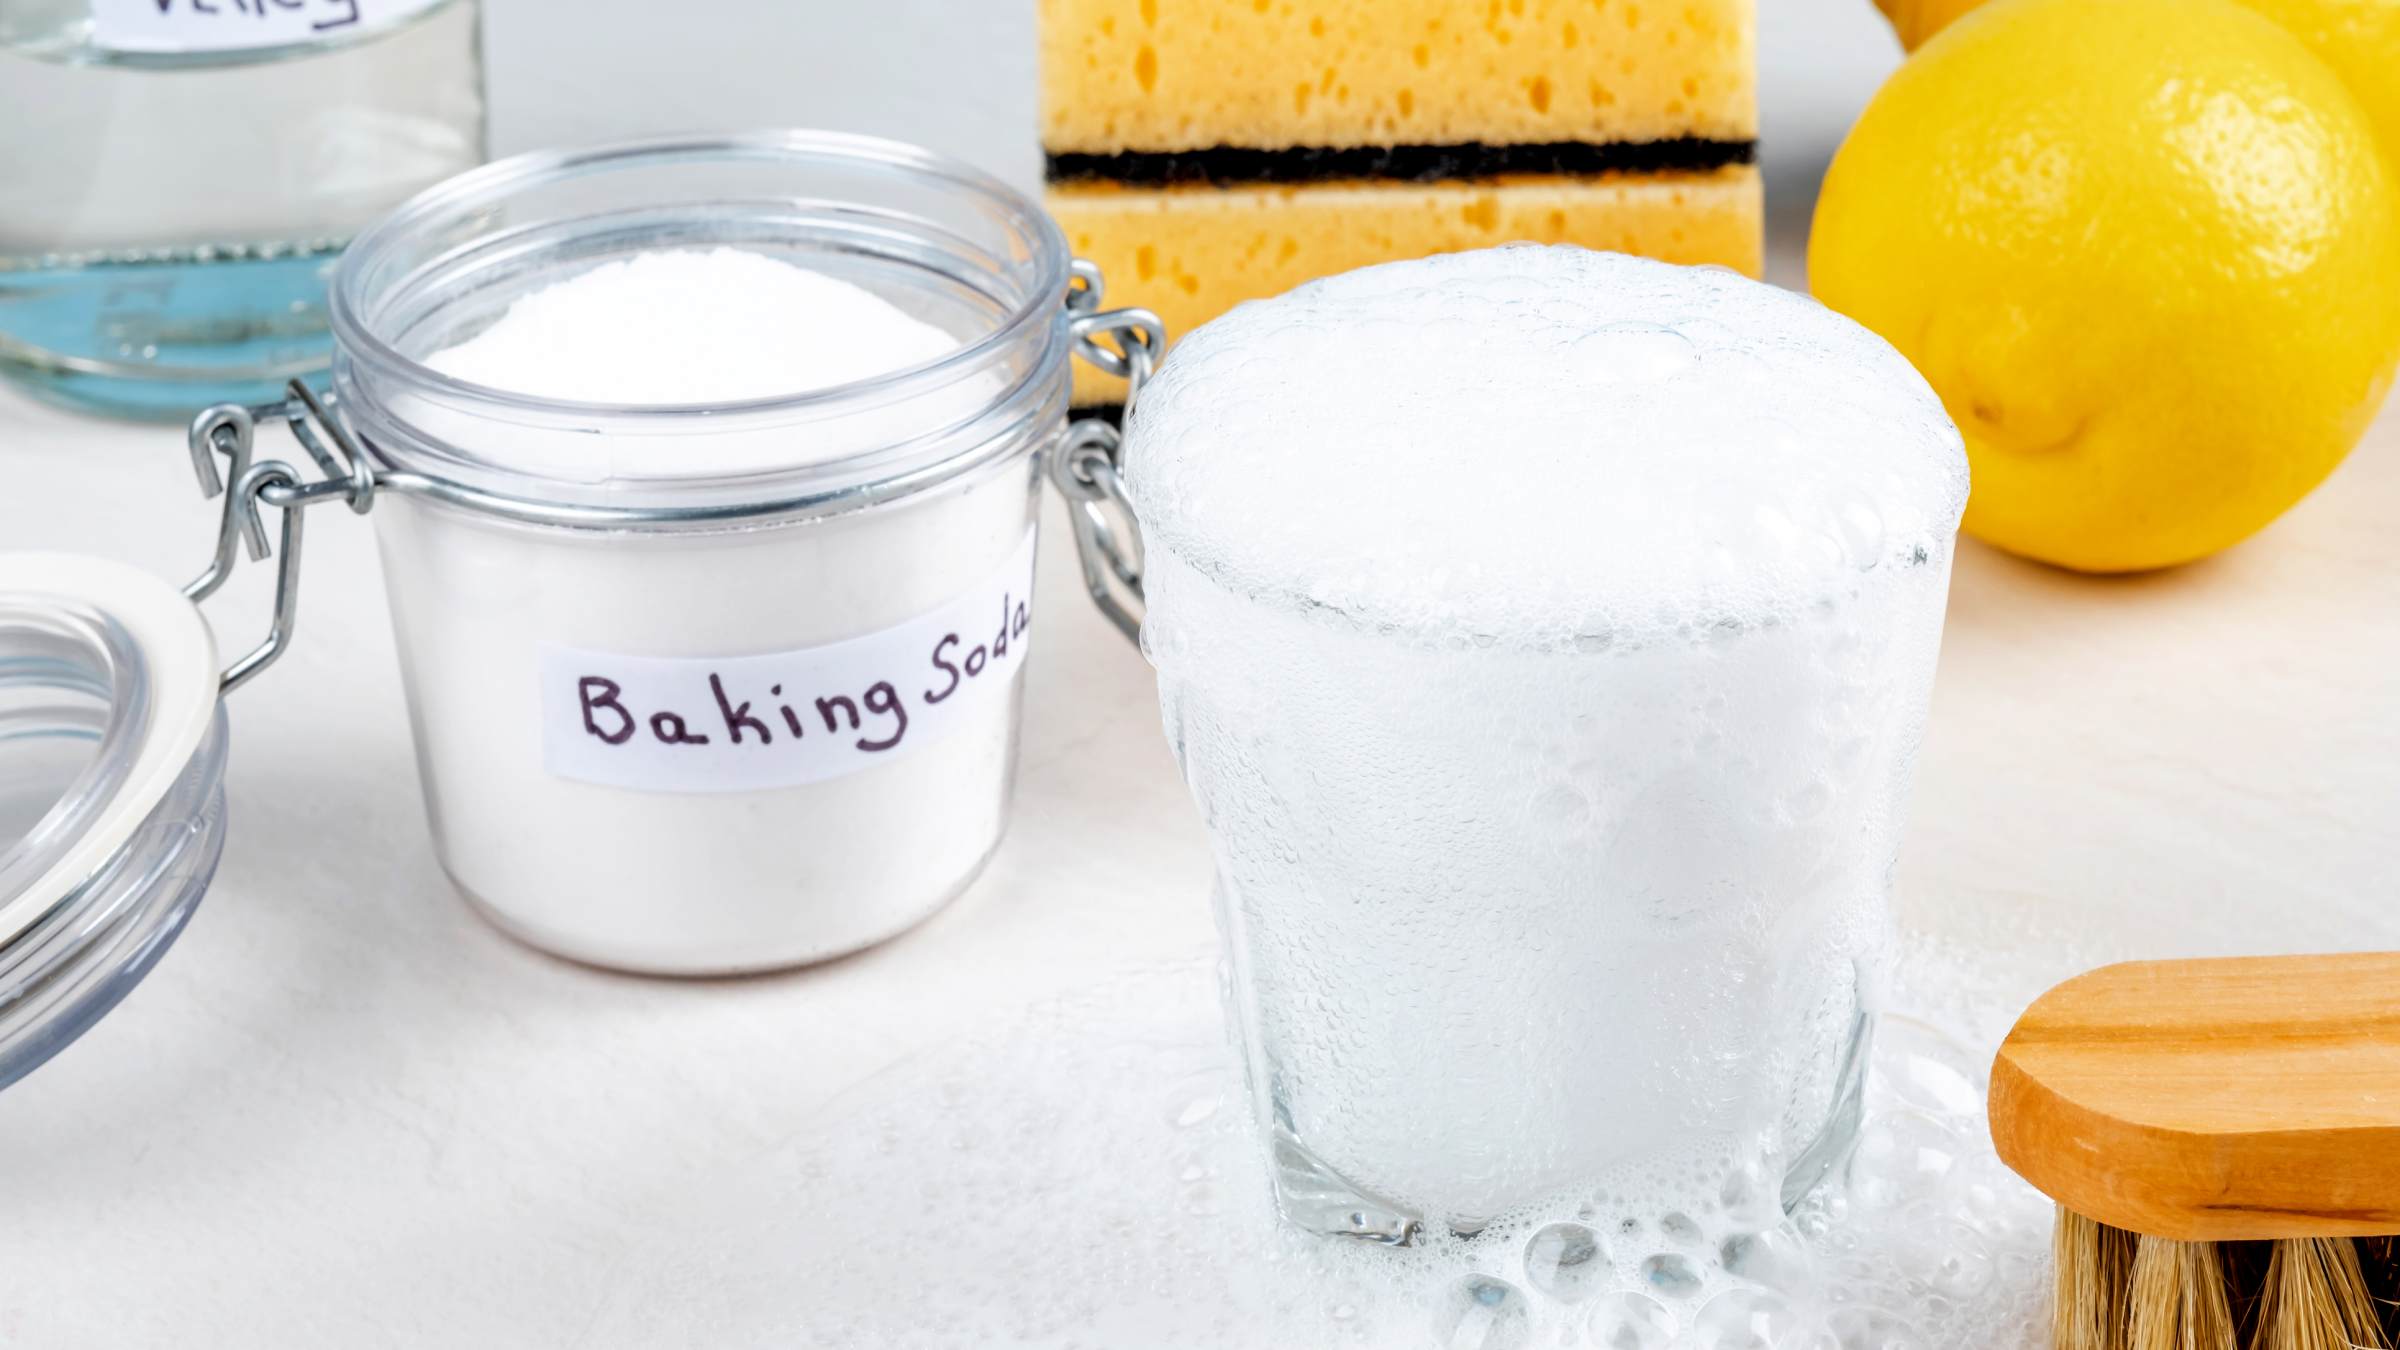 Baking powder vs baking soda in terms of reactivity